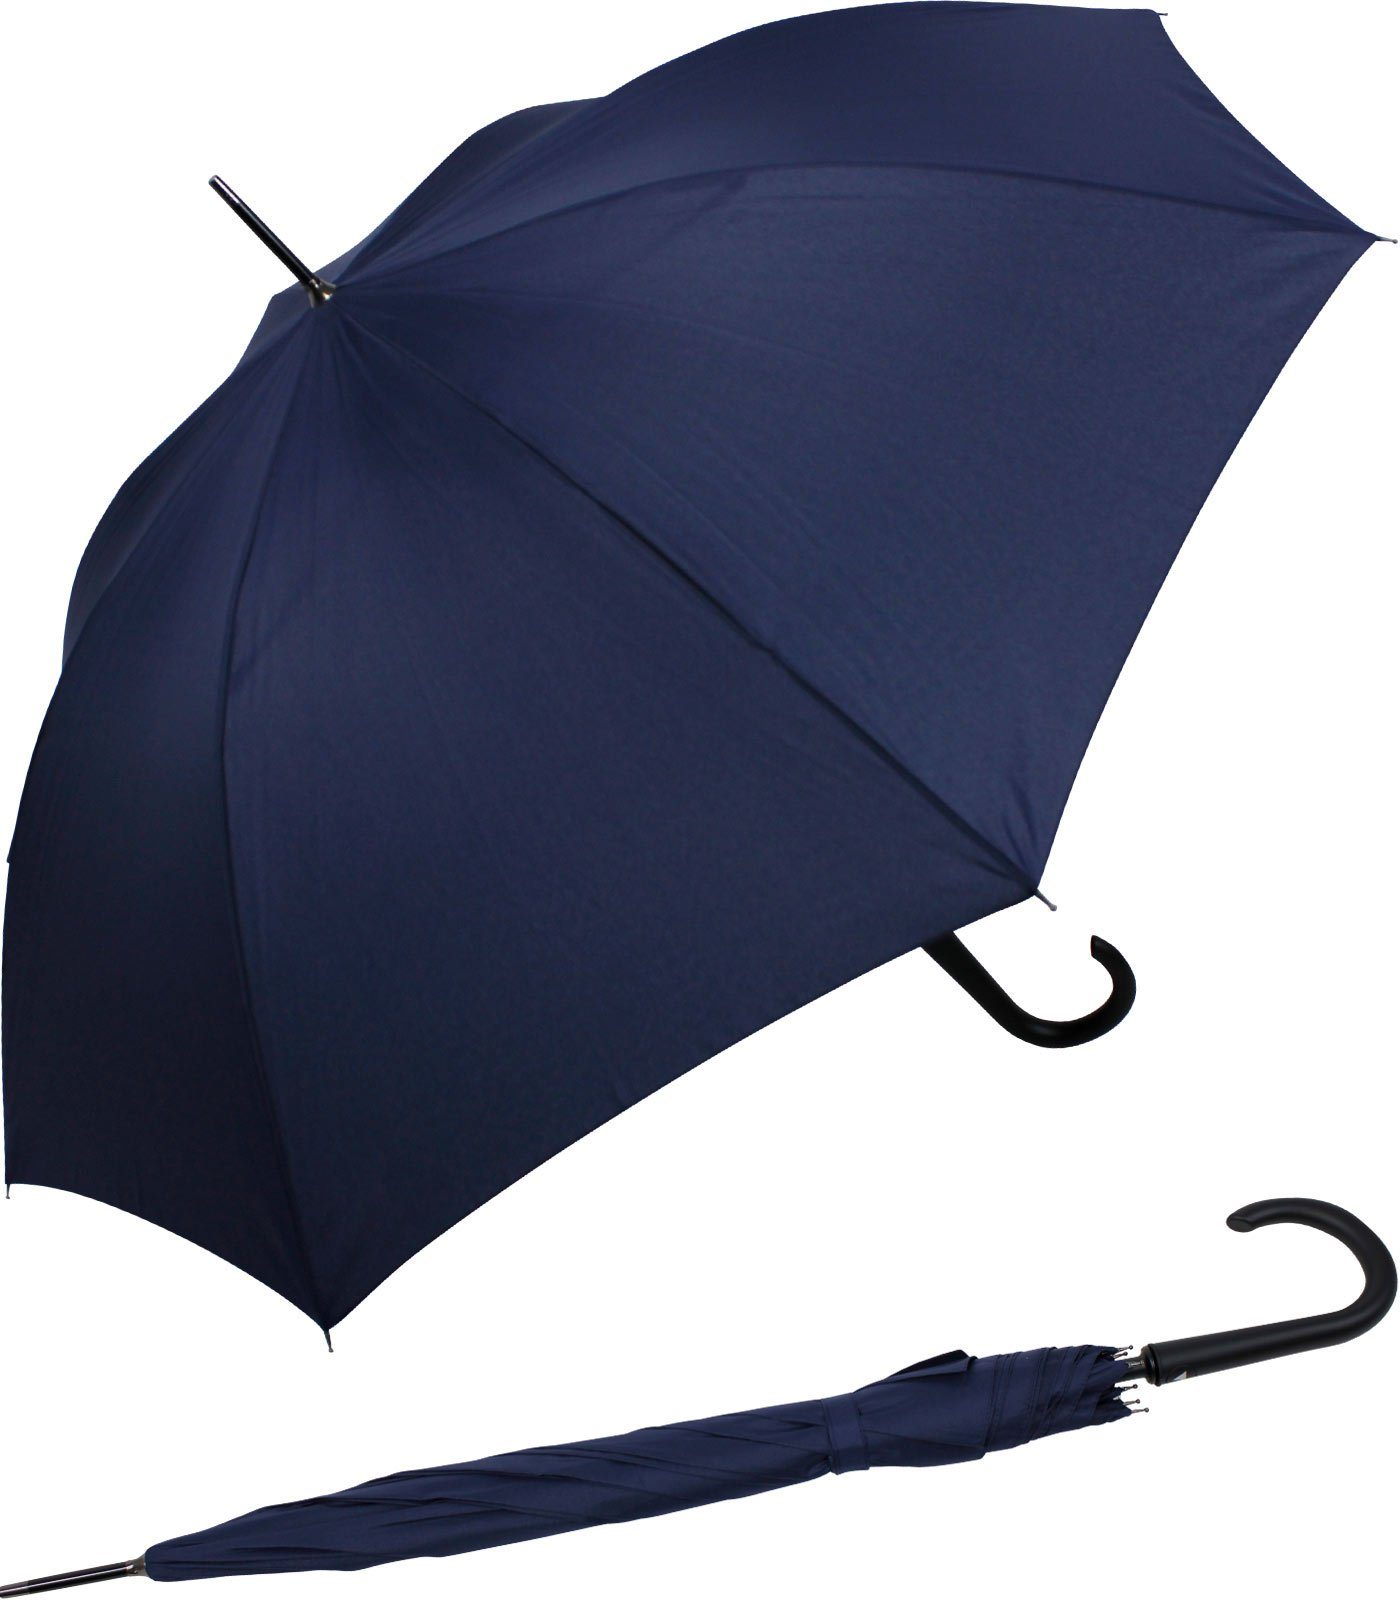 RS-Versand Langregenschirm großer stabiler Regenschirm mit Auf-Automatik, Stahl-Fiberglas-Gestell, integrierter Auslöseknopf navy-blau